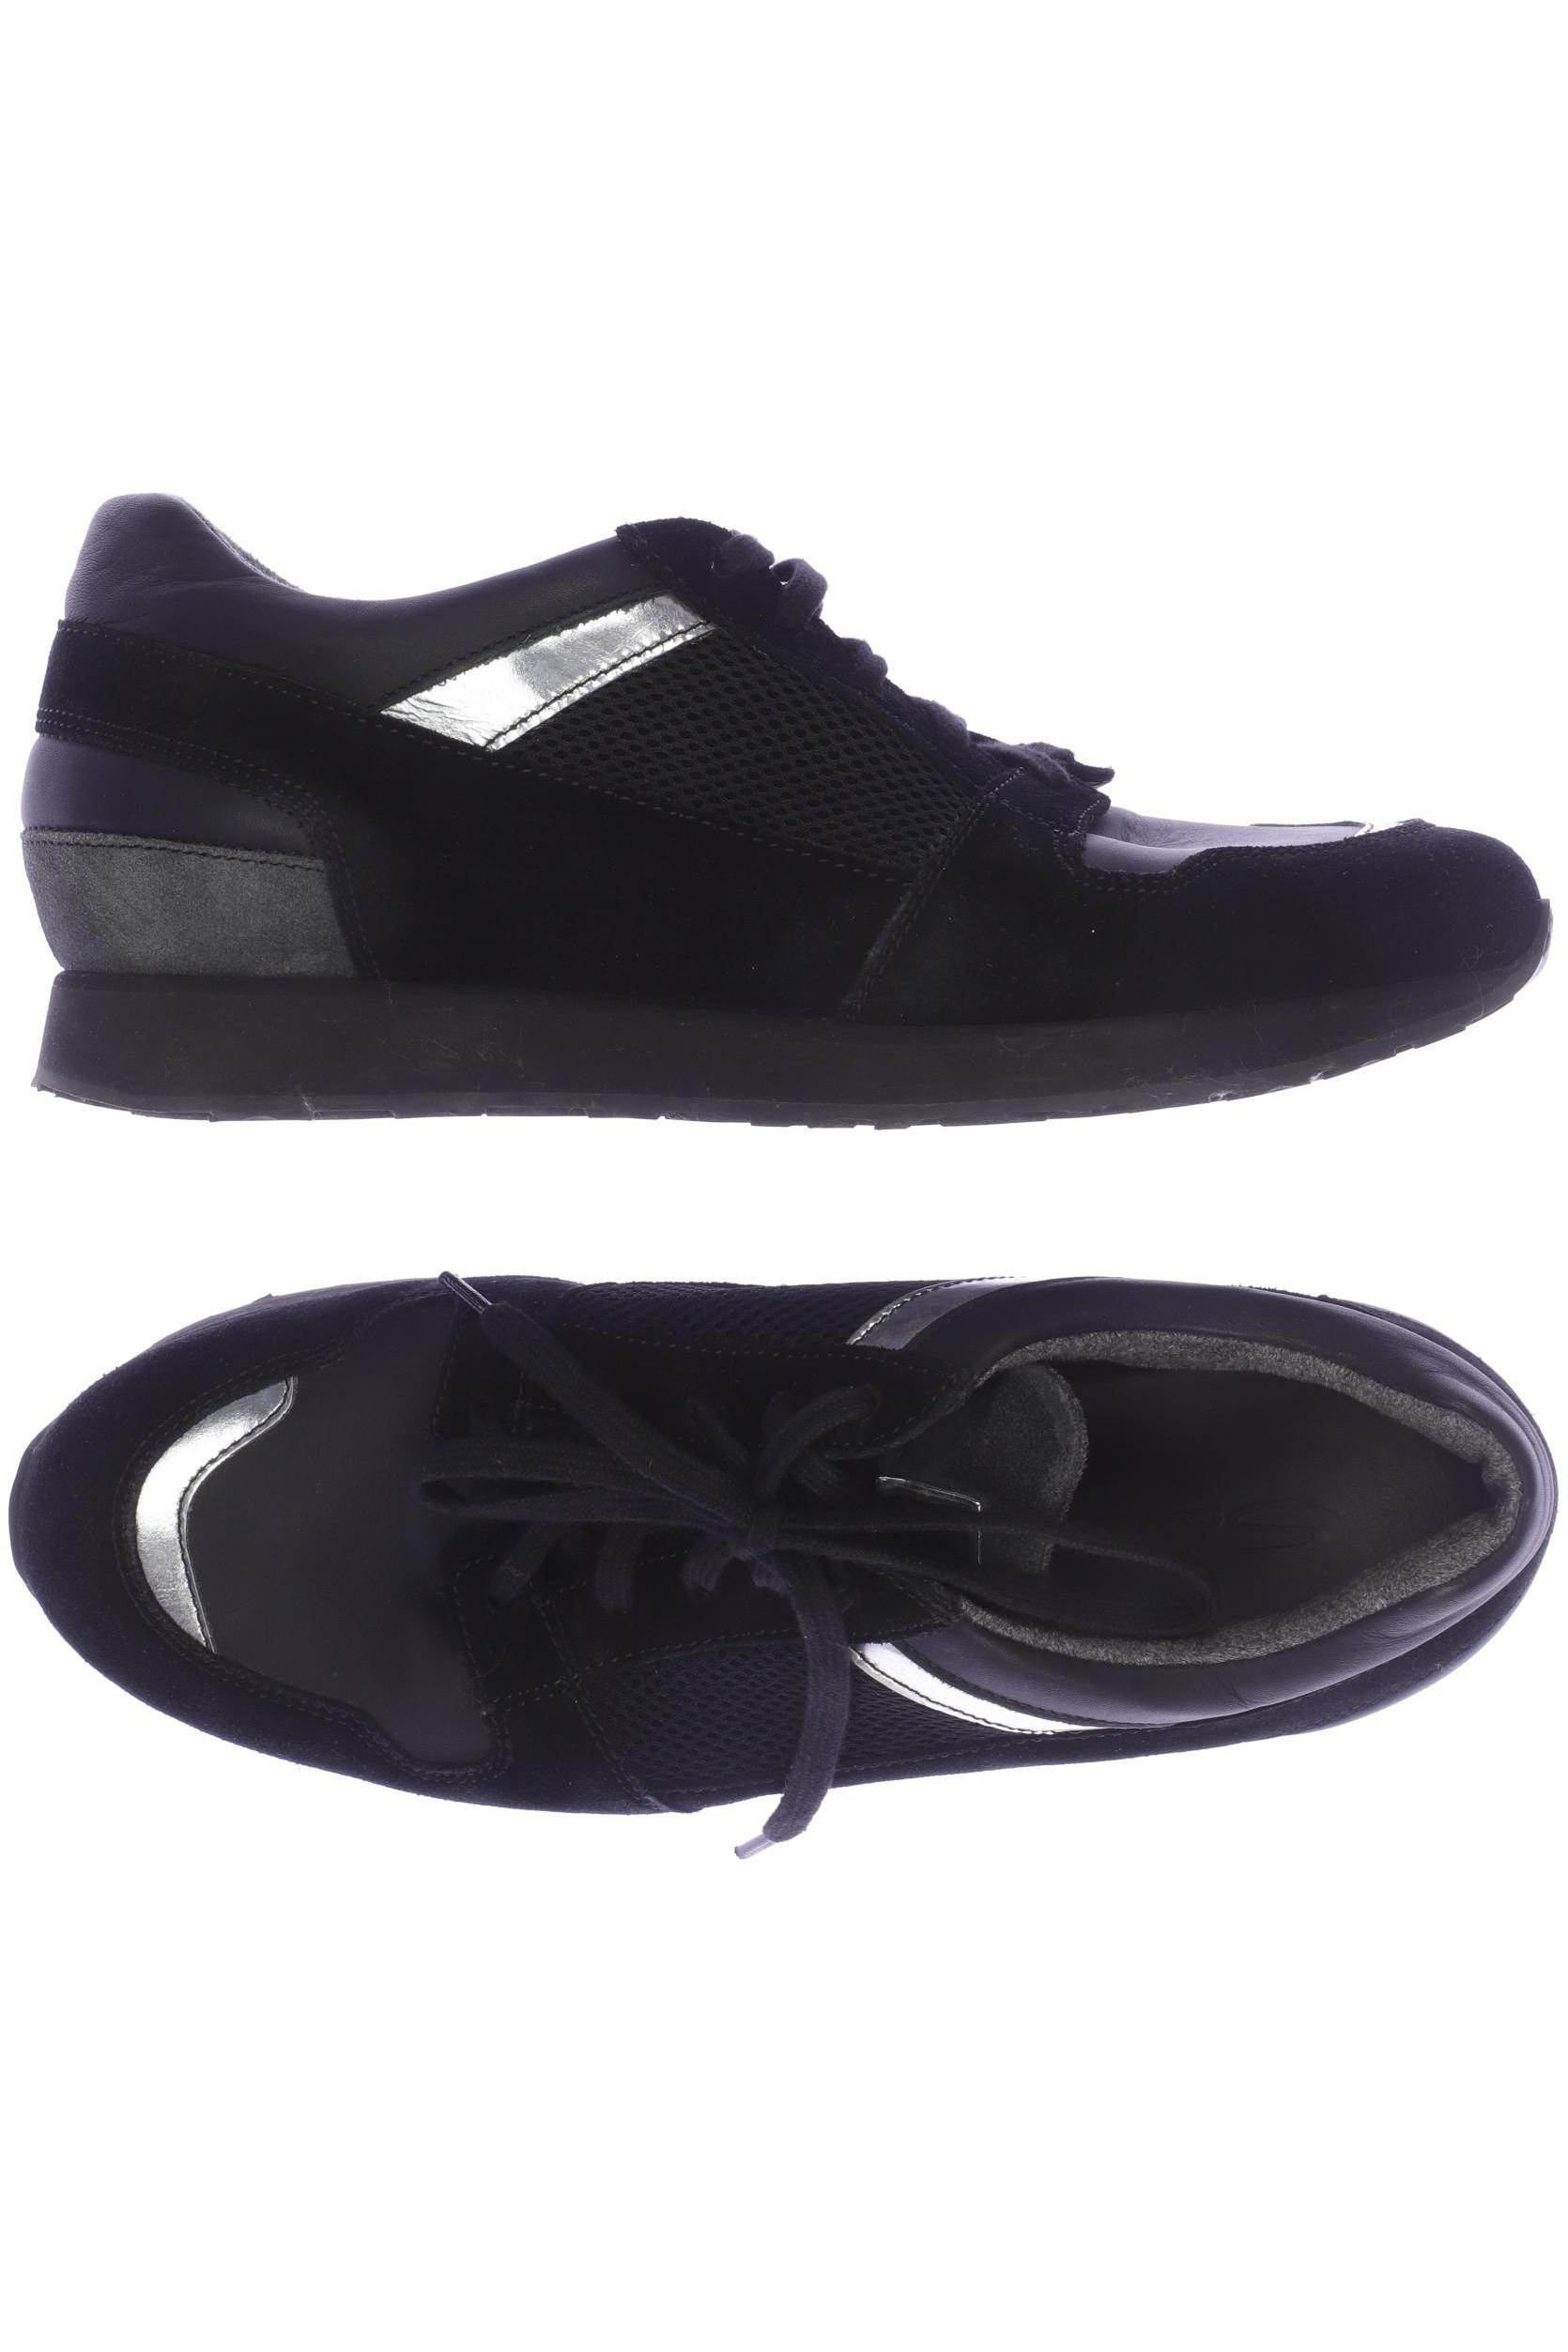 Santoni Damen Sneakers, schwarz von Santoni